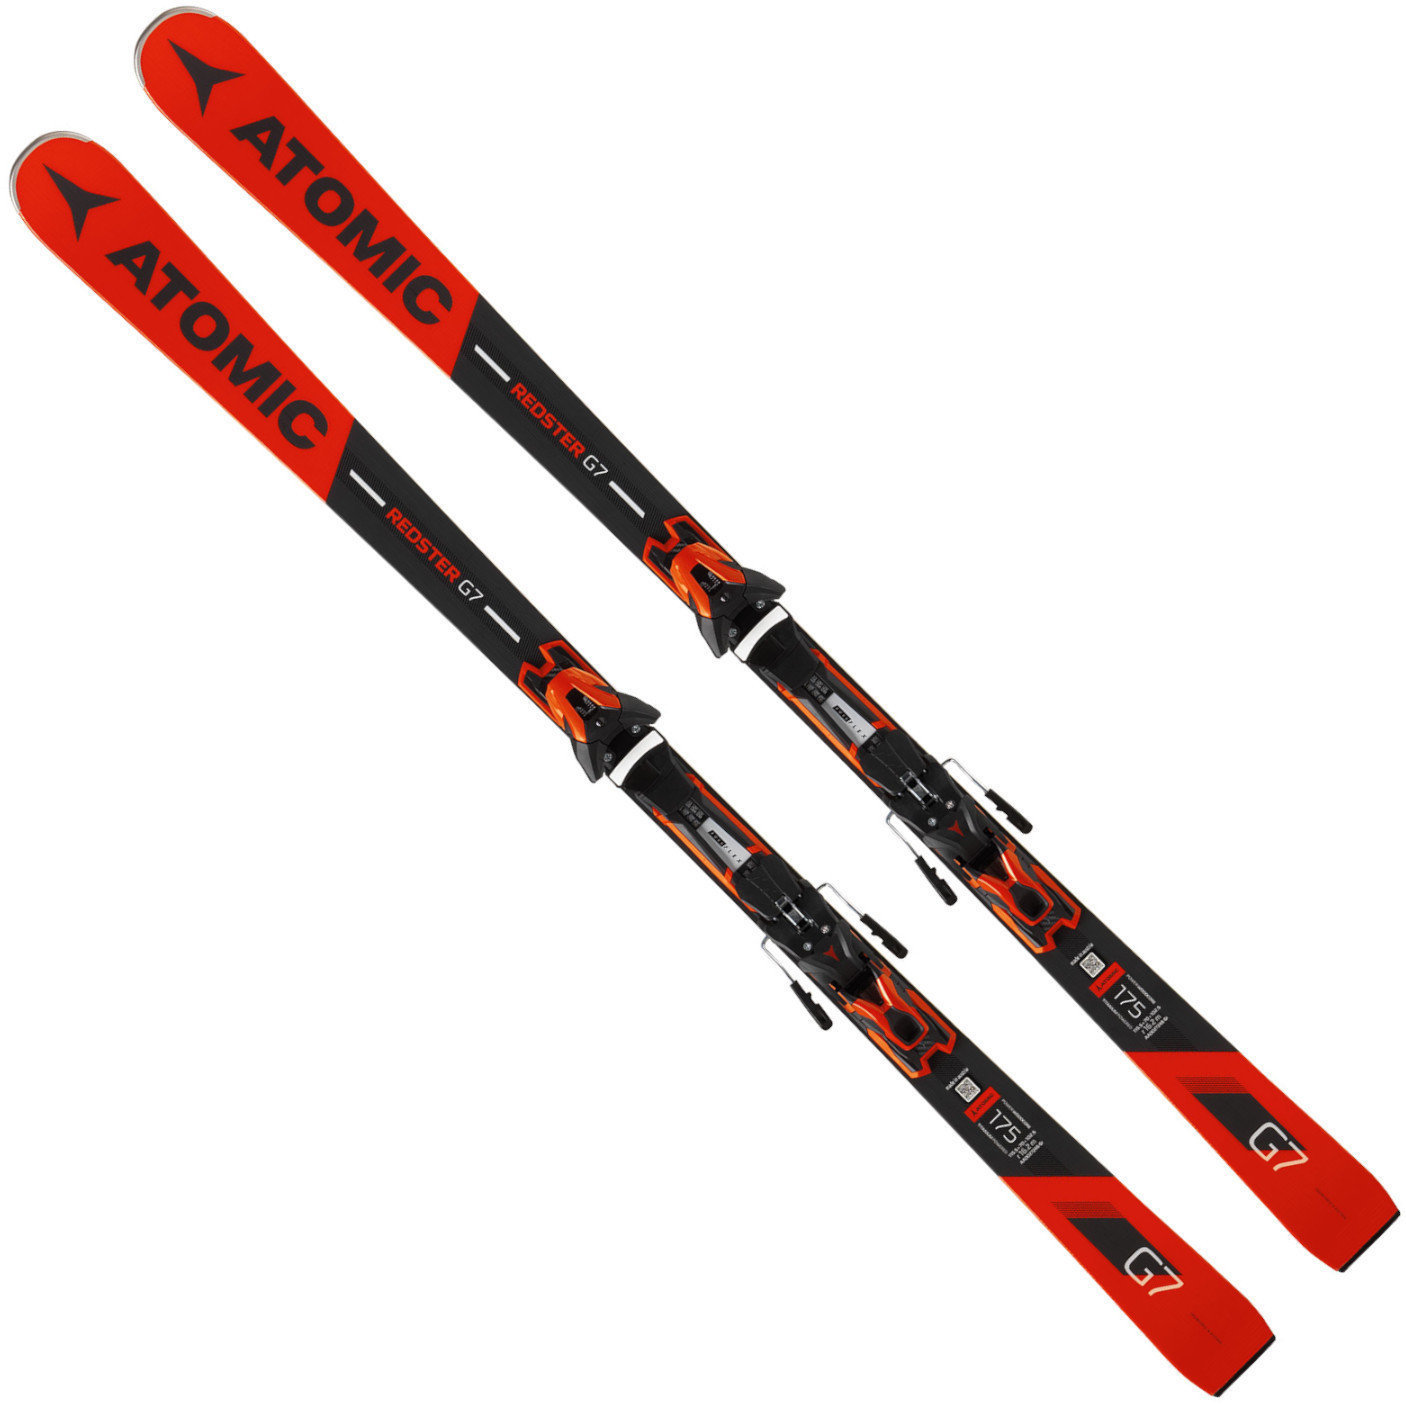 Πέδιλα Σκι Atomic Redster G7 + FT 12 GW 175 18/19 skis